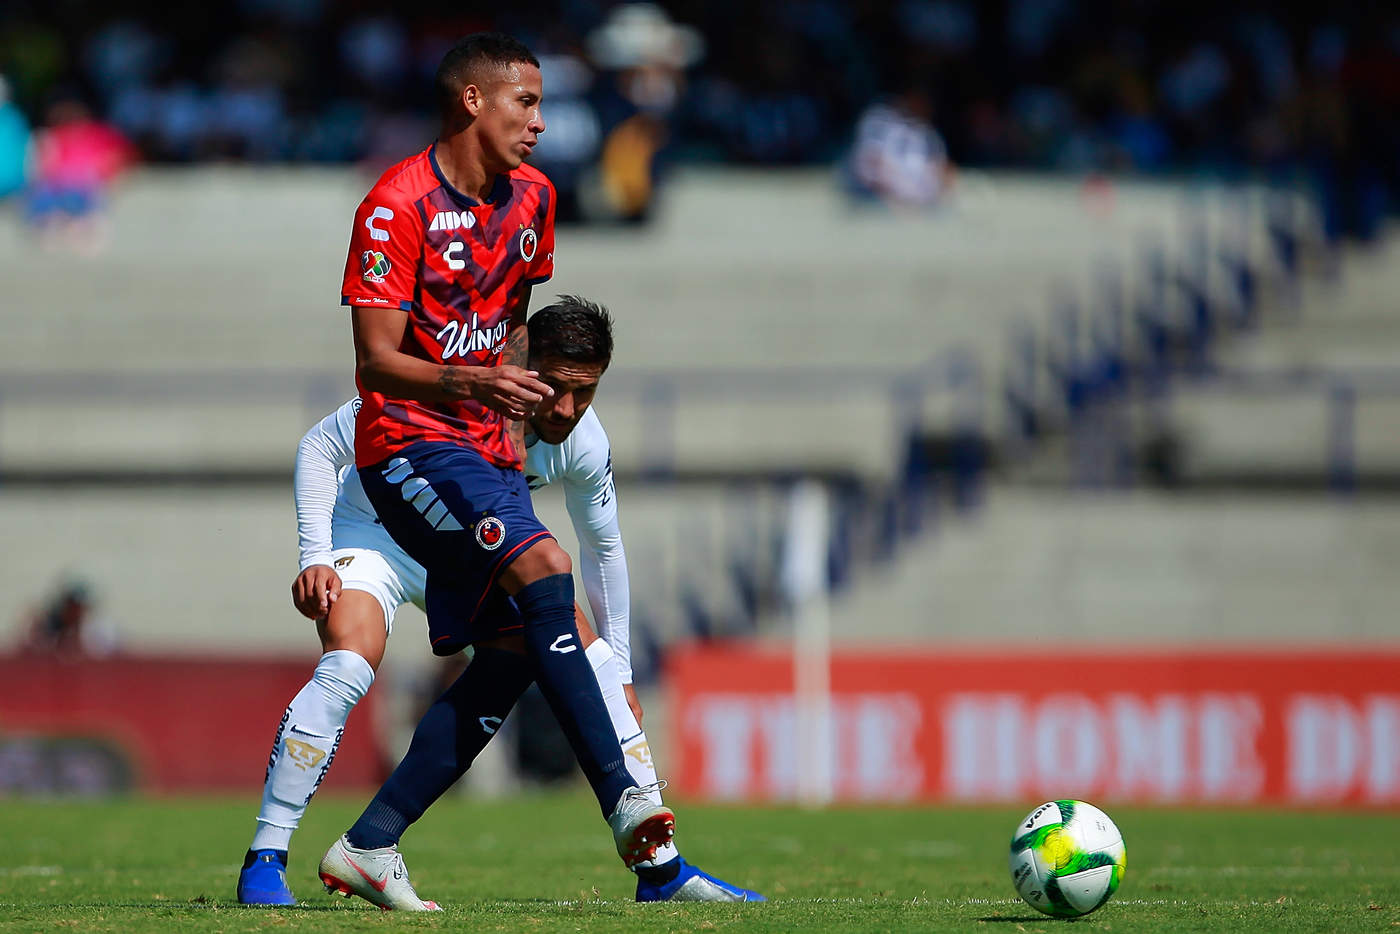 Diego Chávez (frente) y Andres Iniestra (detrás) durante el partido de la jornada 1 del Clausura 2019. (Jam Media)